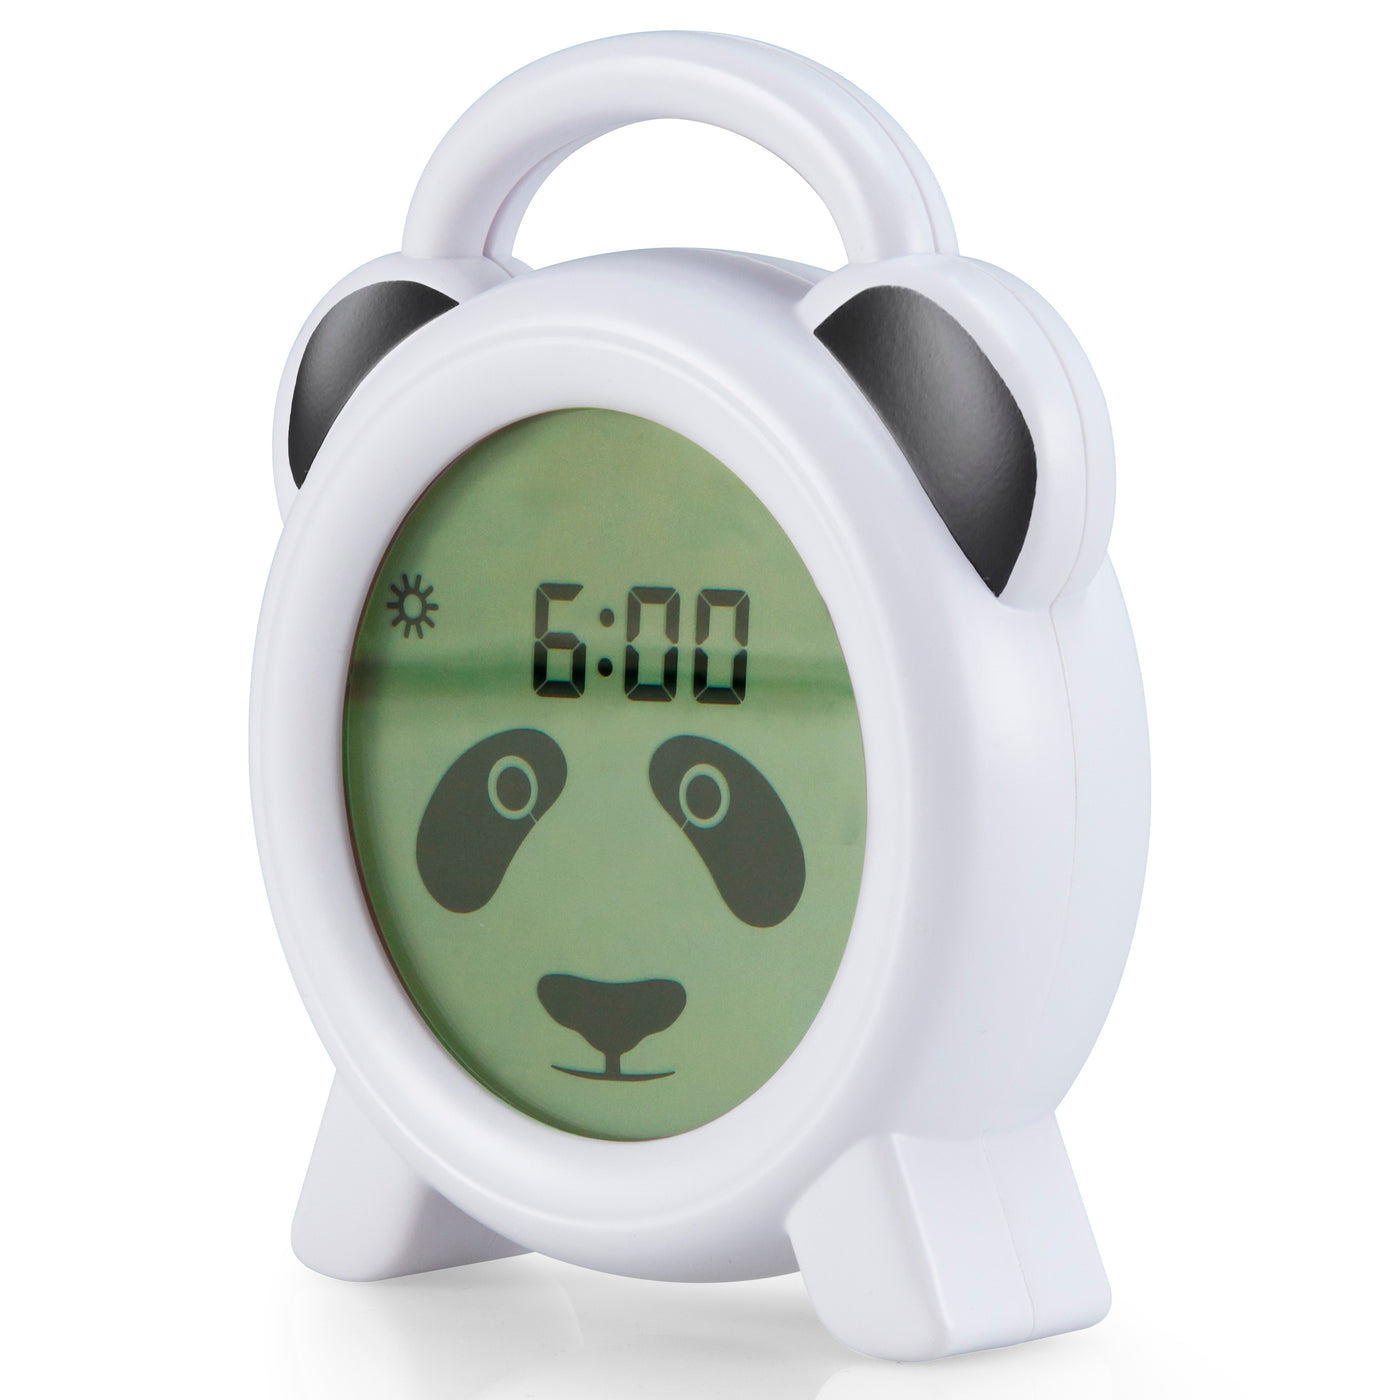 Alecto BC100PANDA - Slaaptrainer, nachtlampje en wekker, panda